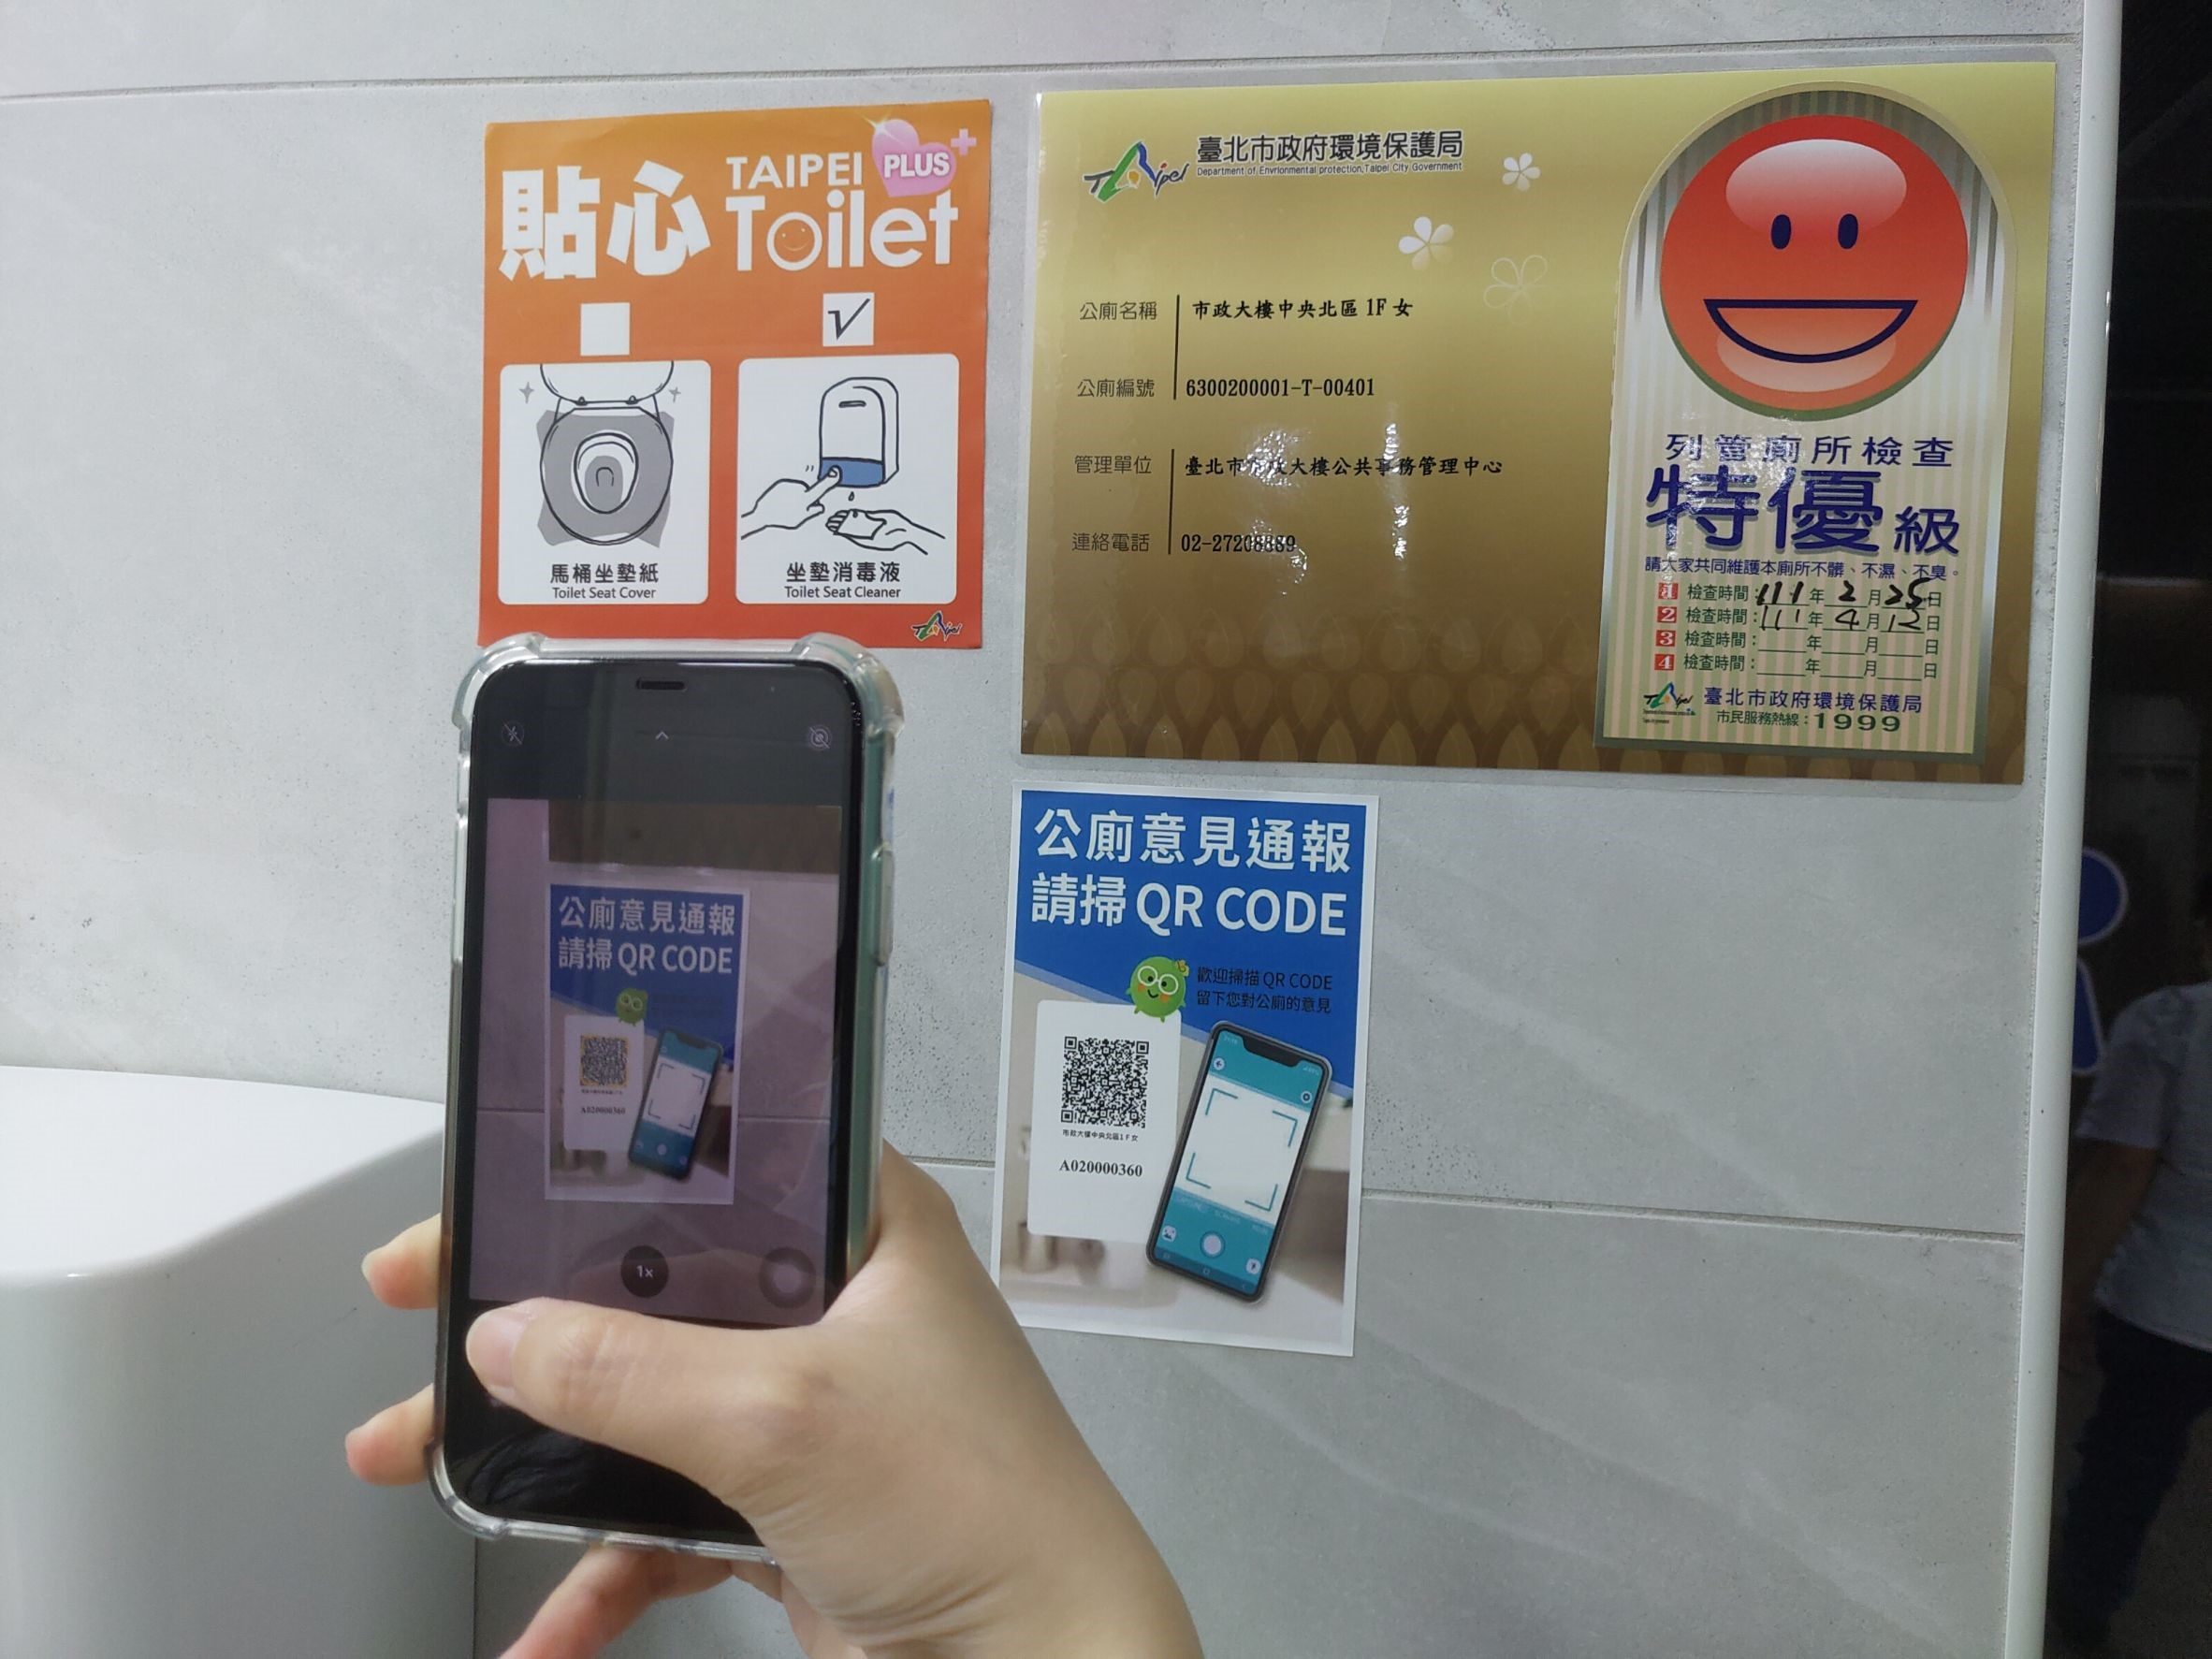 臺北市列管公廁意見通報專屬QR CODE系統